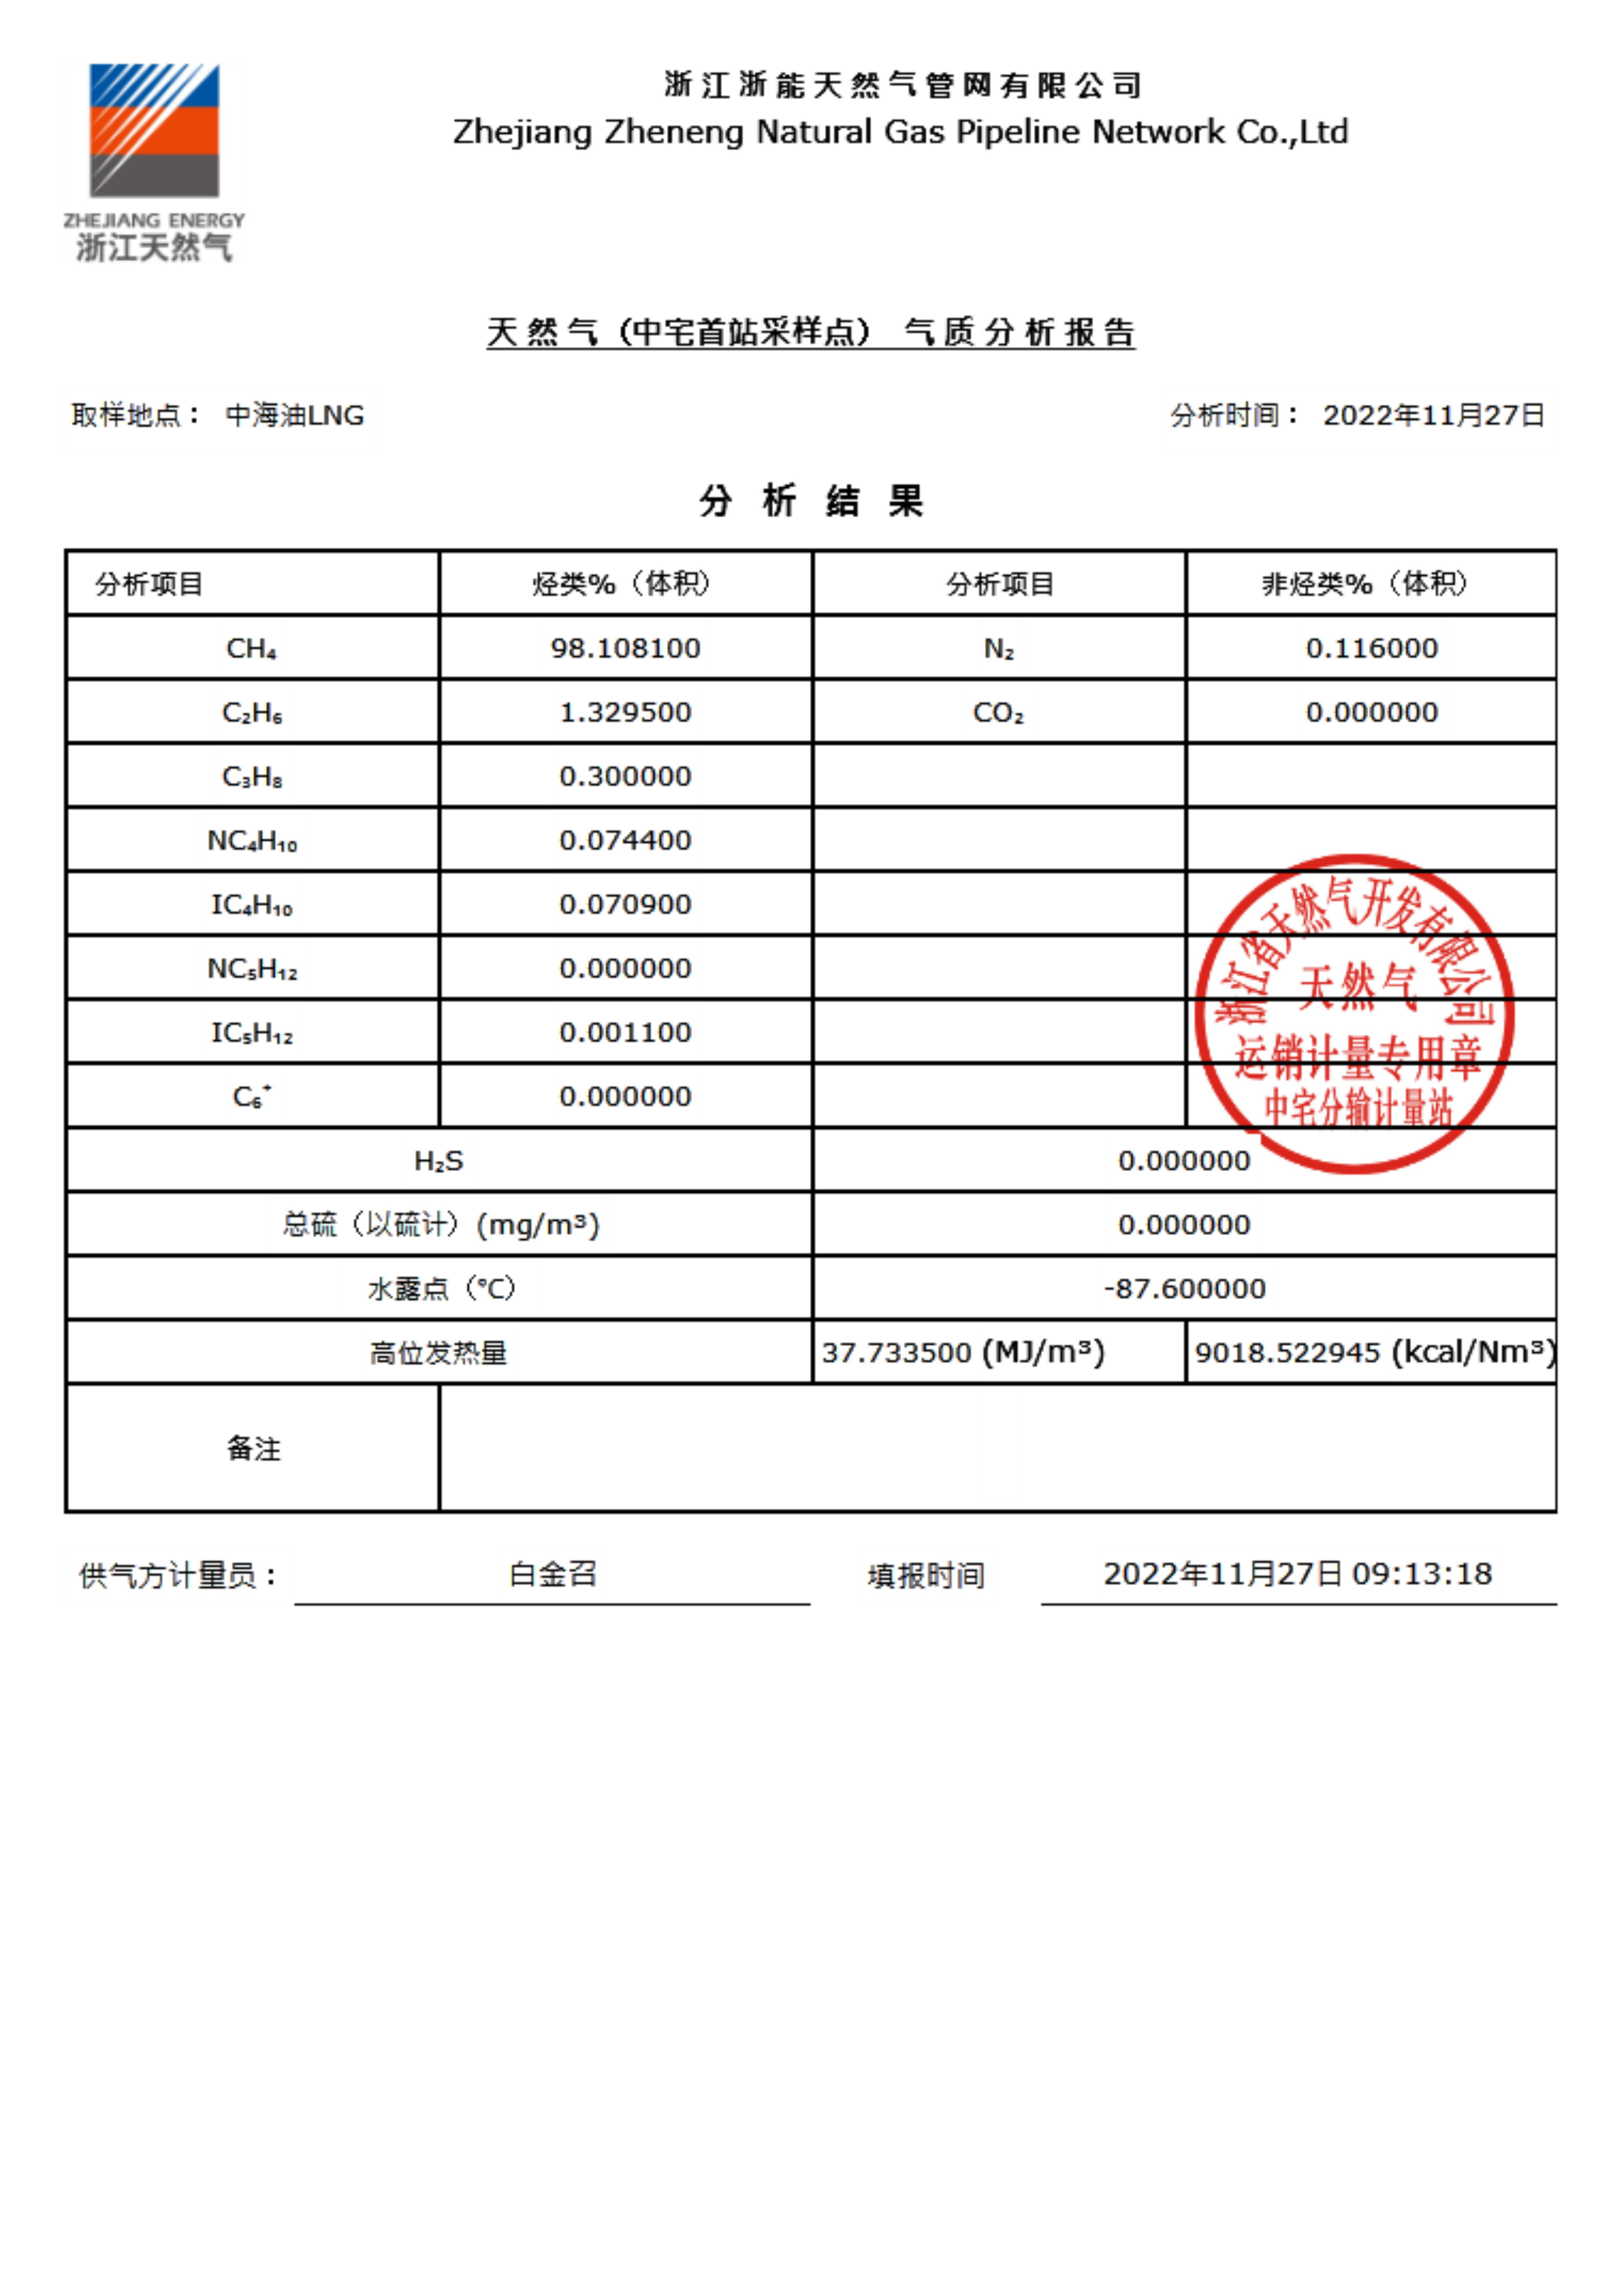 臺州市城市天然氣有限公司管輸天然氣（采樣點）氣質分析報告公示